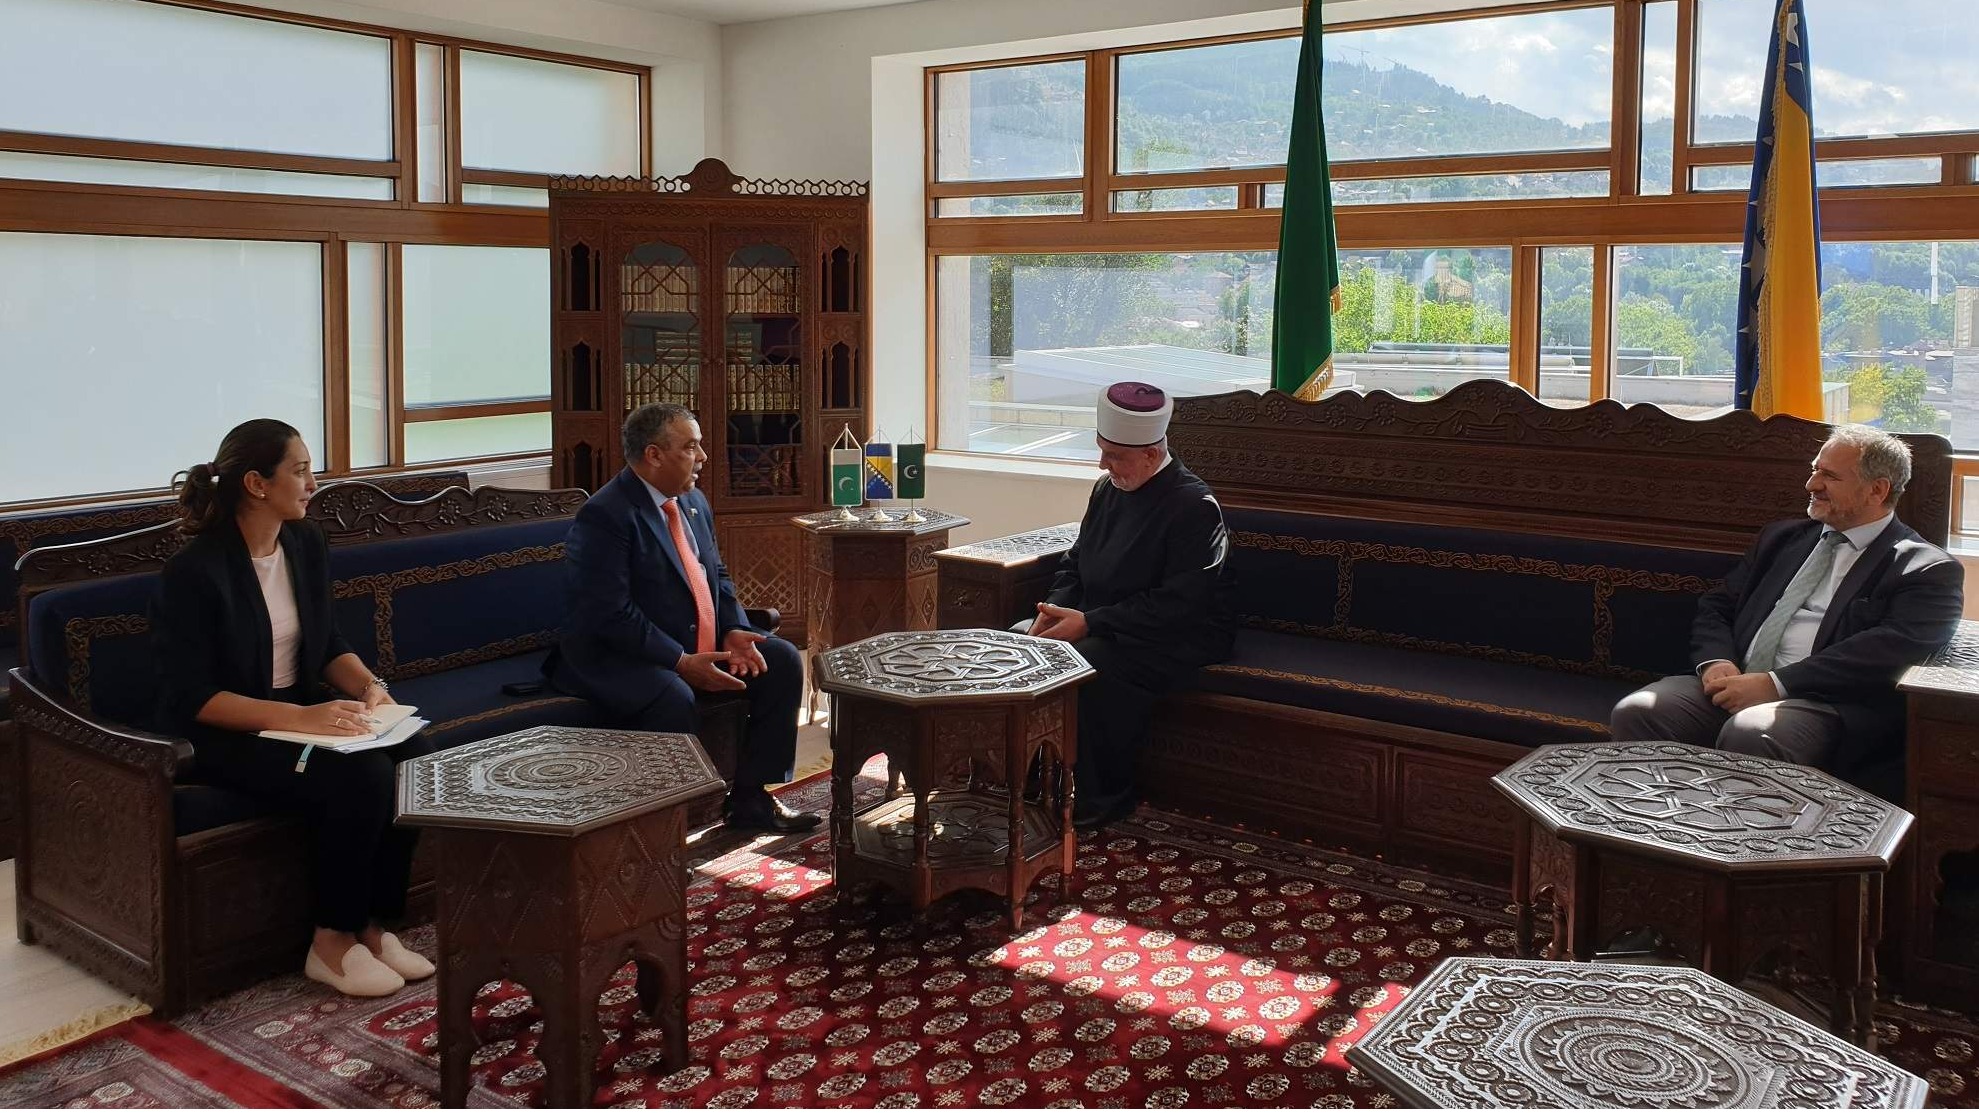 Reisul-ulemu posjetio pakistanski ambasador u našoj zemlji